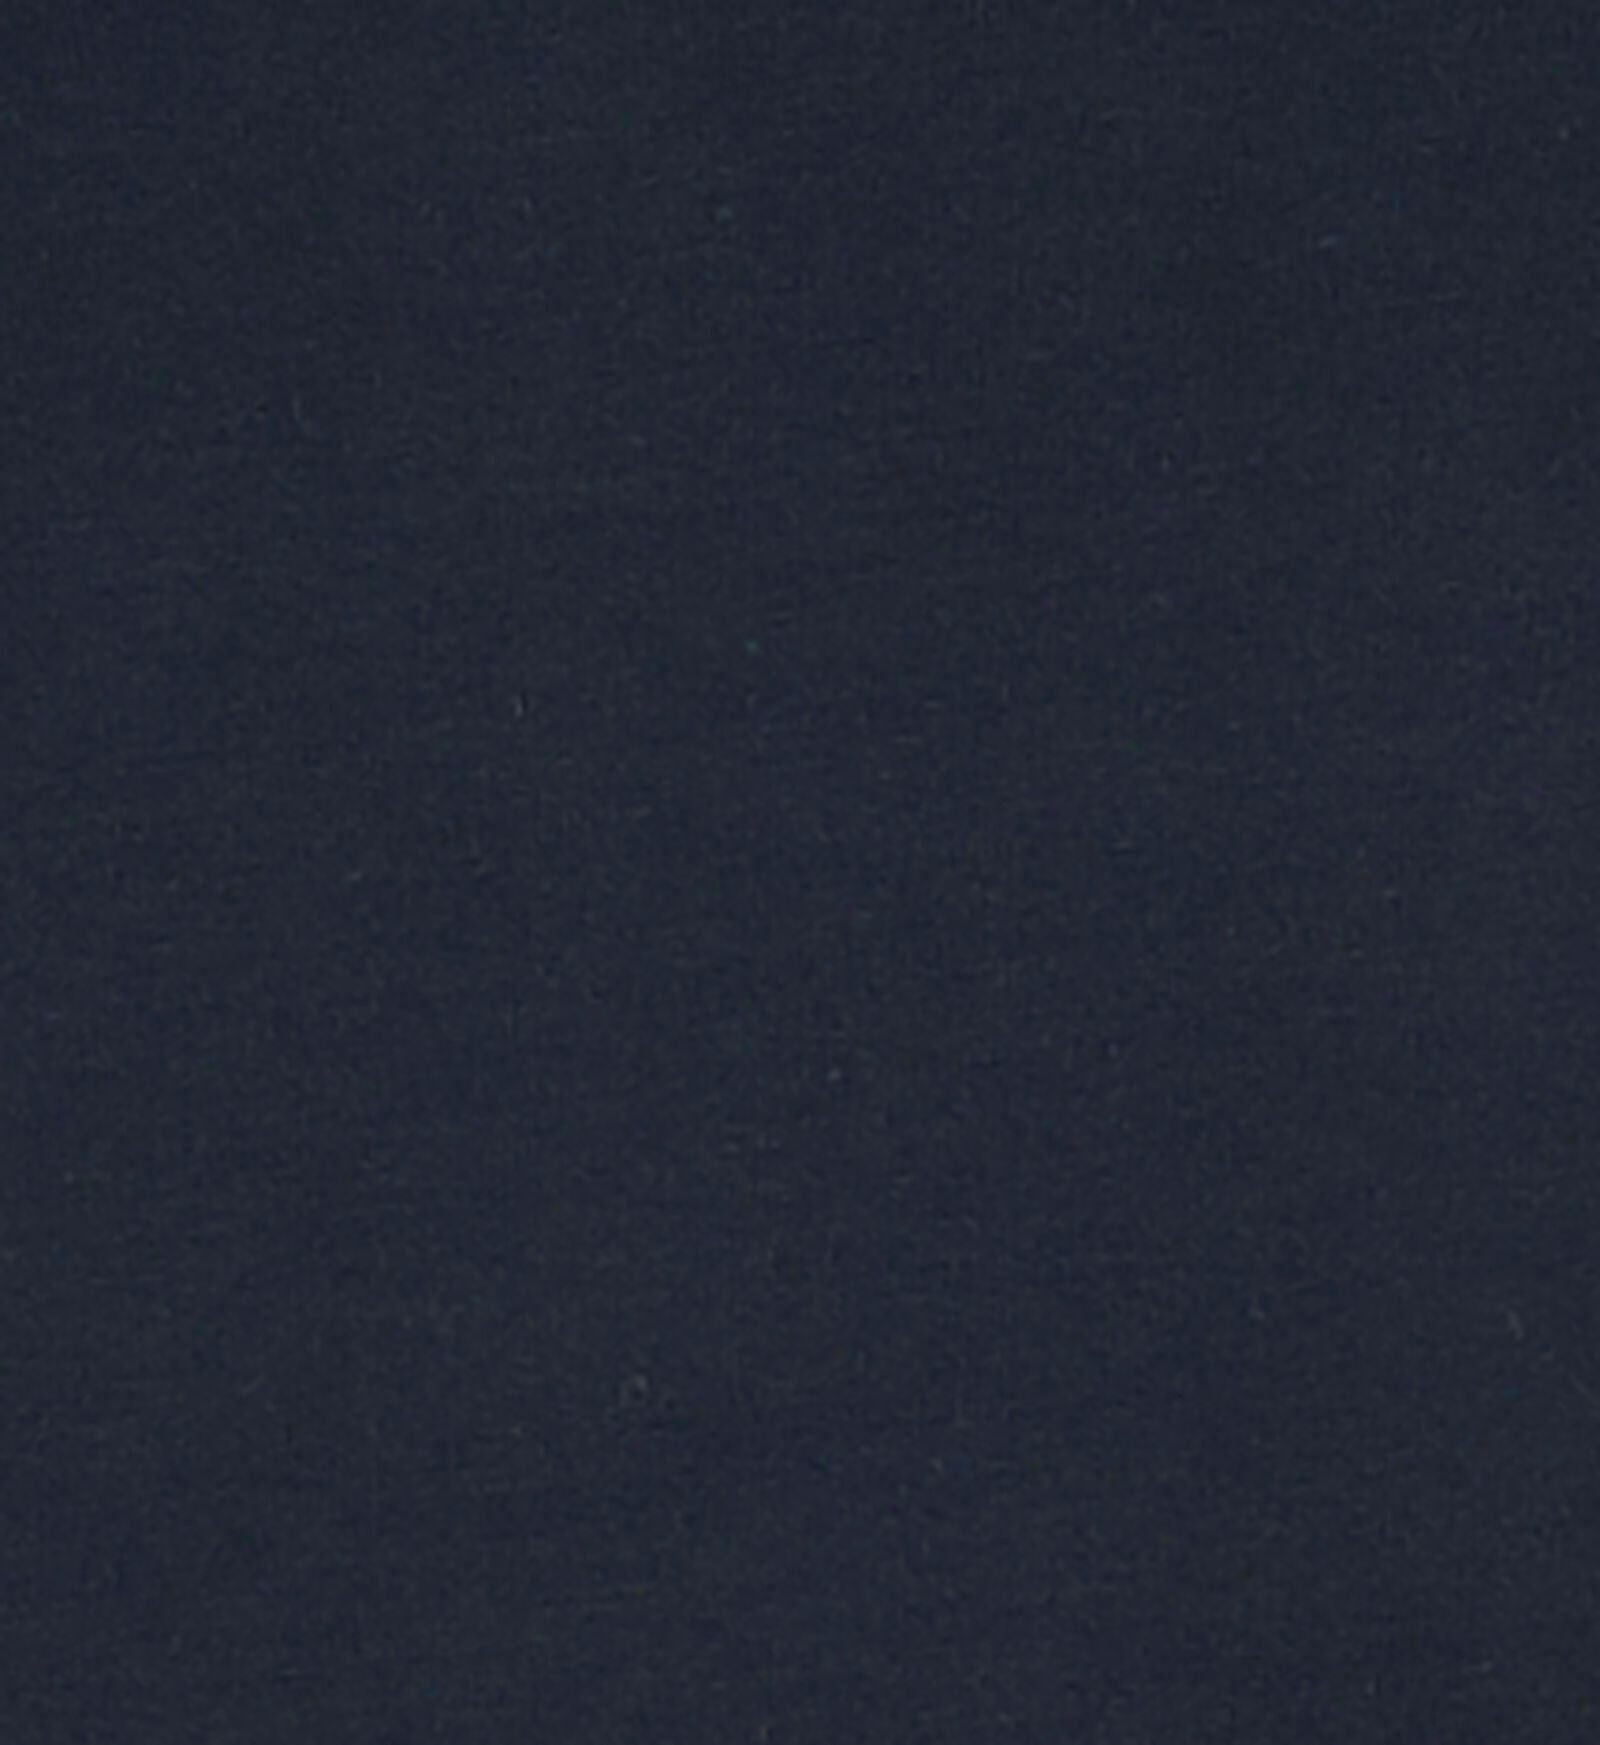 dameshemd donkerblauw XL - 19604035 - HEMA